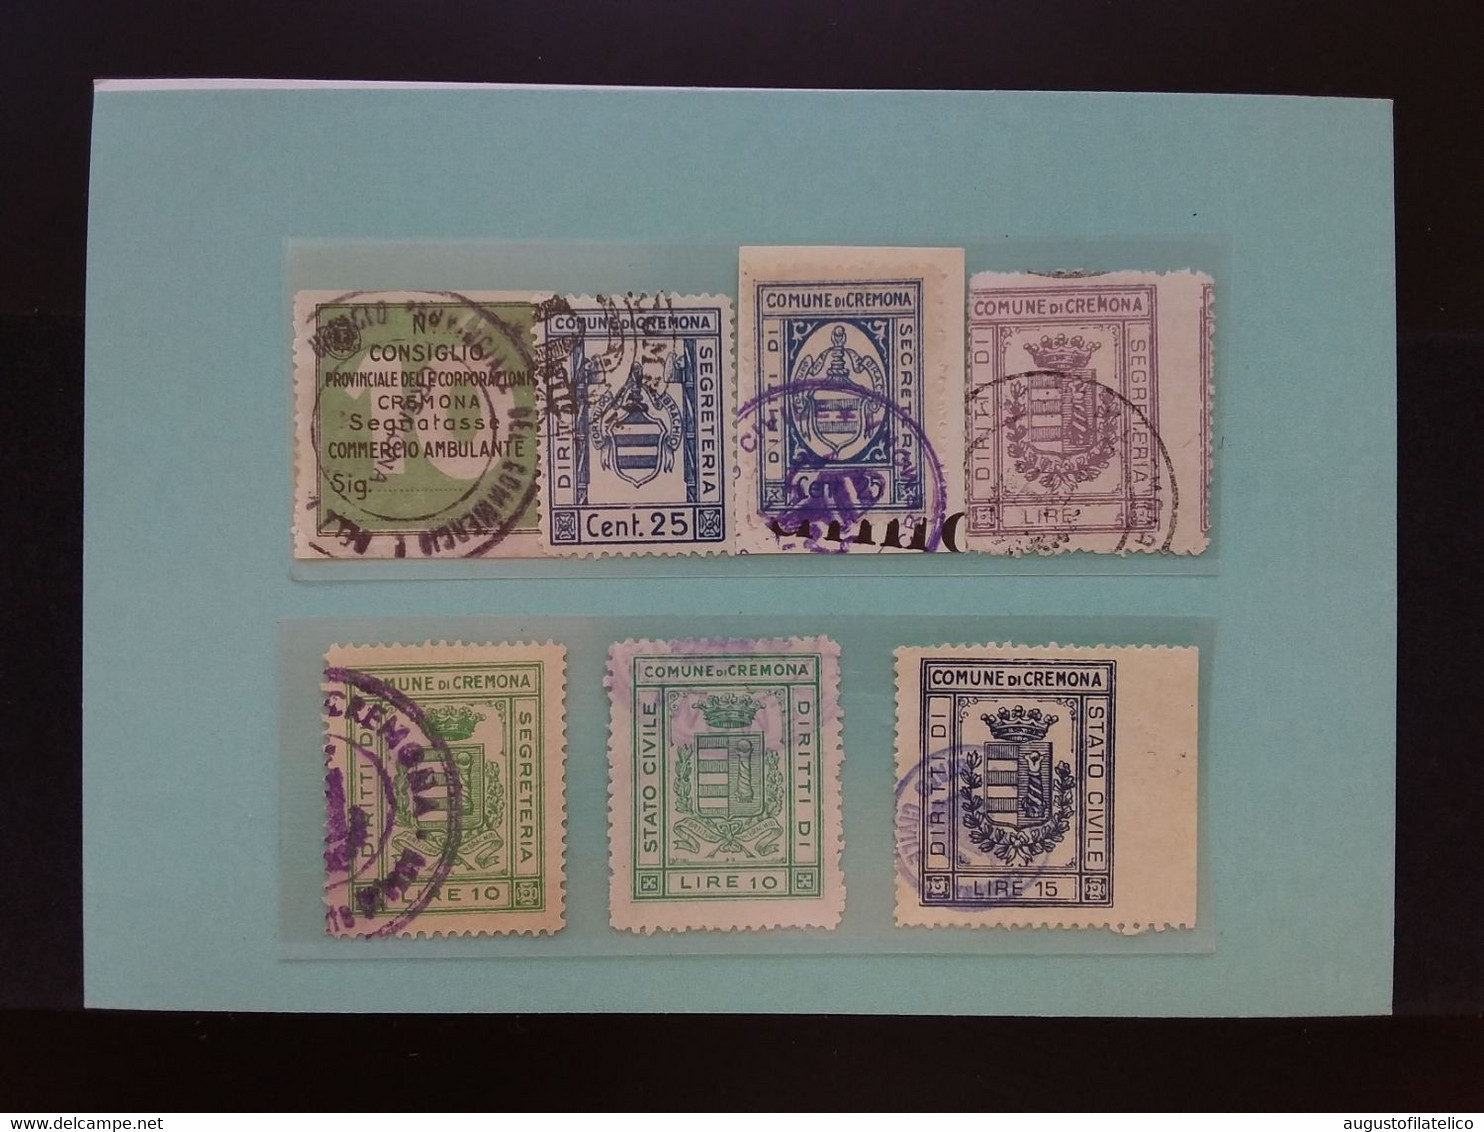 Cremona - 7 Marche Comunali Timbrate - Anni '30/'50 + Spese Postali - Revenue Stamps